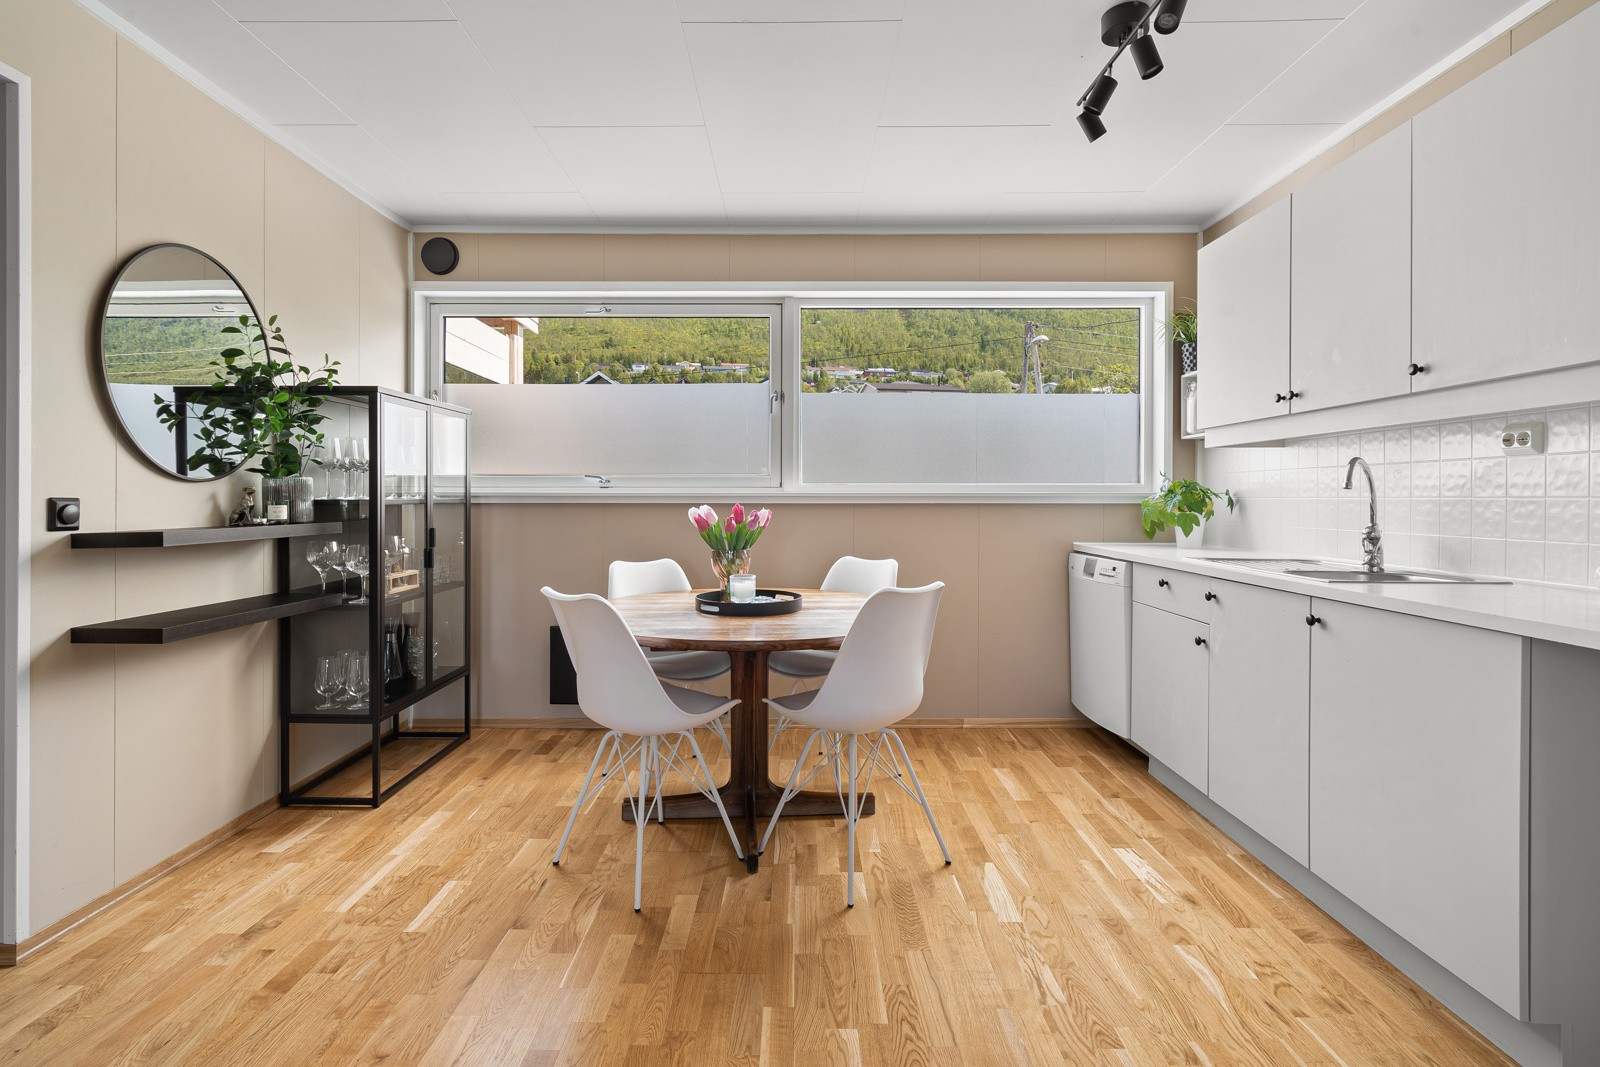 Åpent og fint kjøkken med store vindusflater som gir godt med naturlig lys